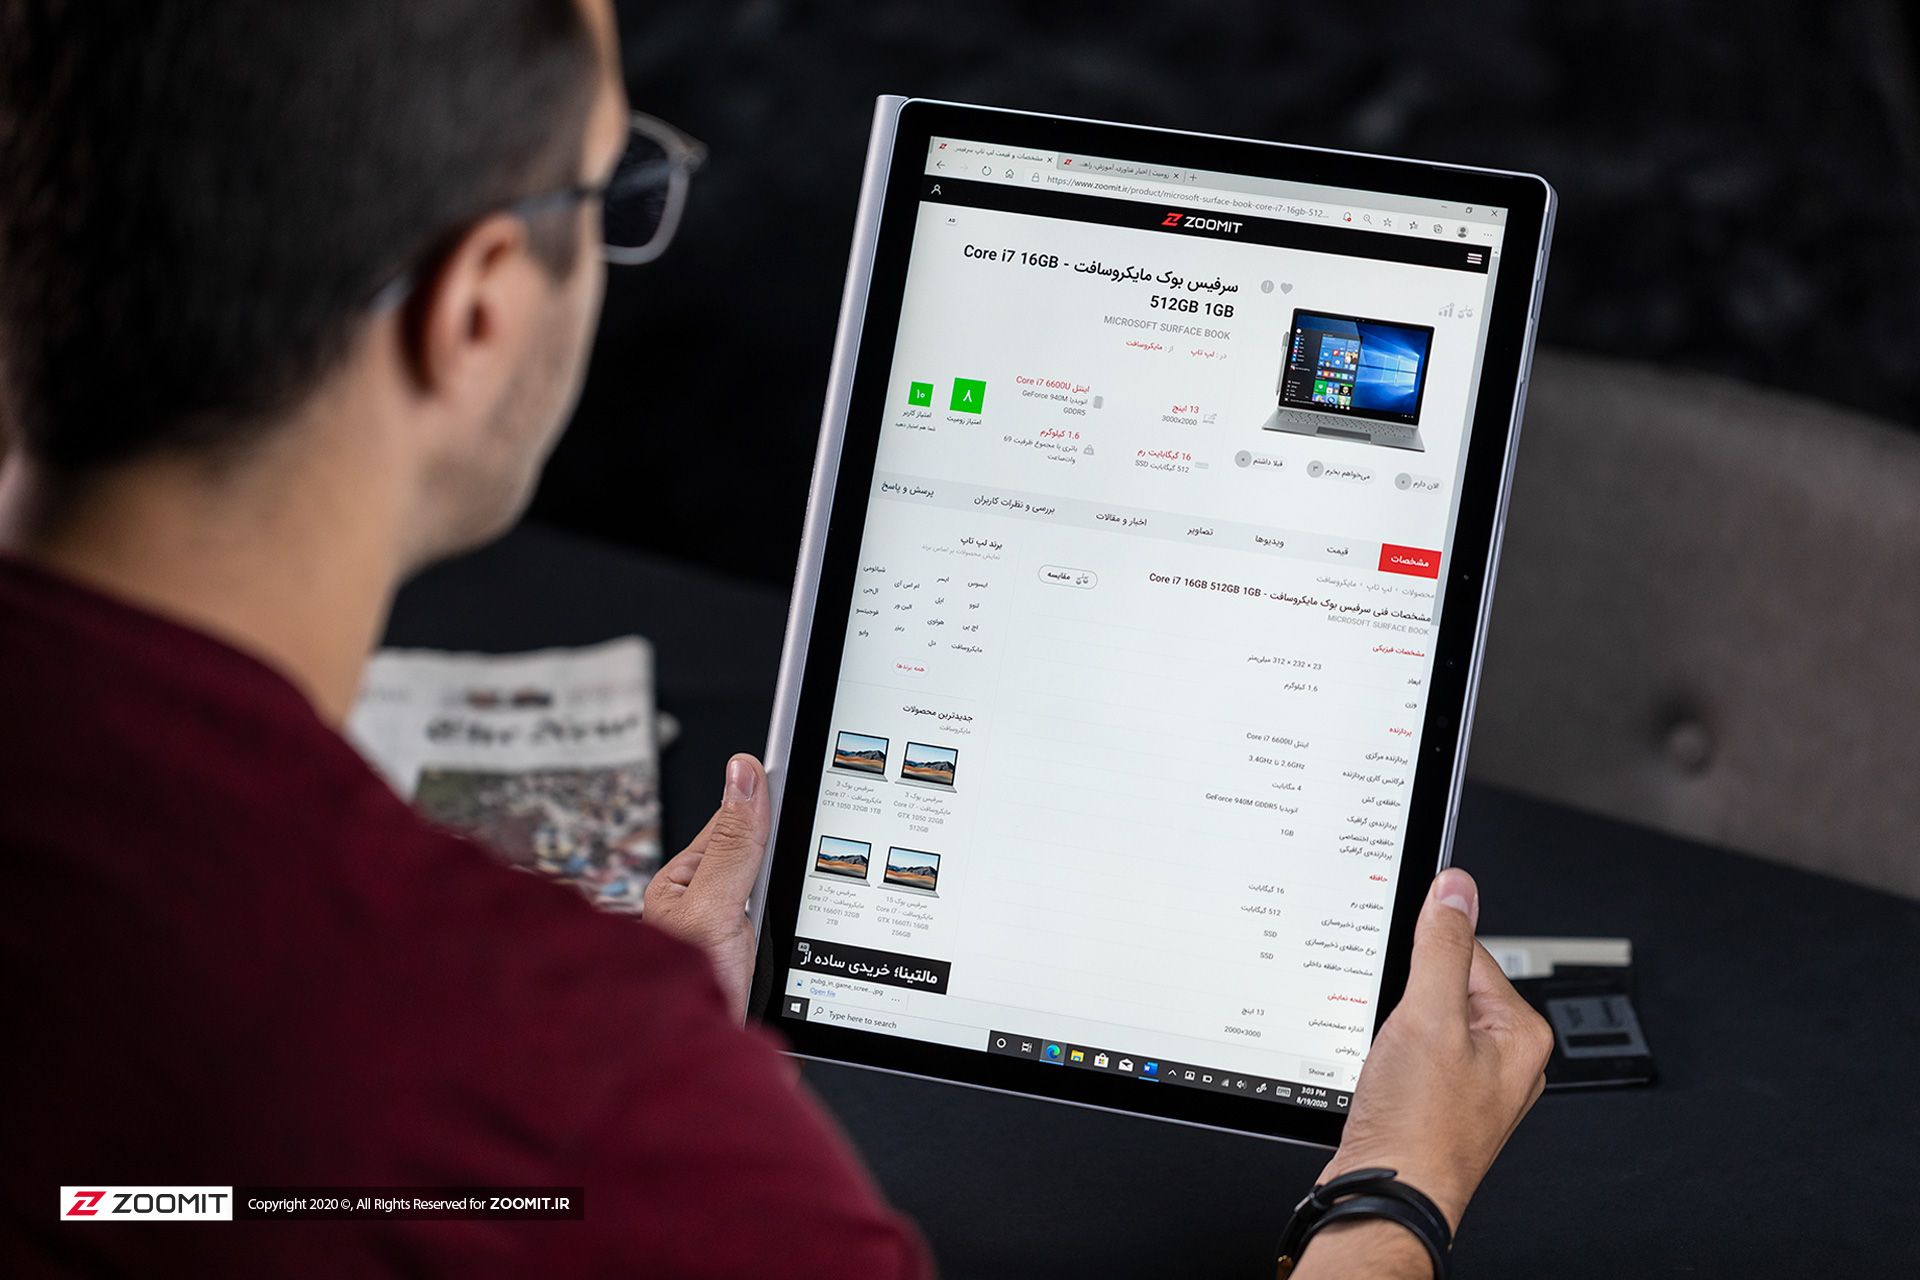 سرفیس بوک ۳ مایکروسافت / Microsoft Surface Book 3 در حالت تبلت